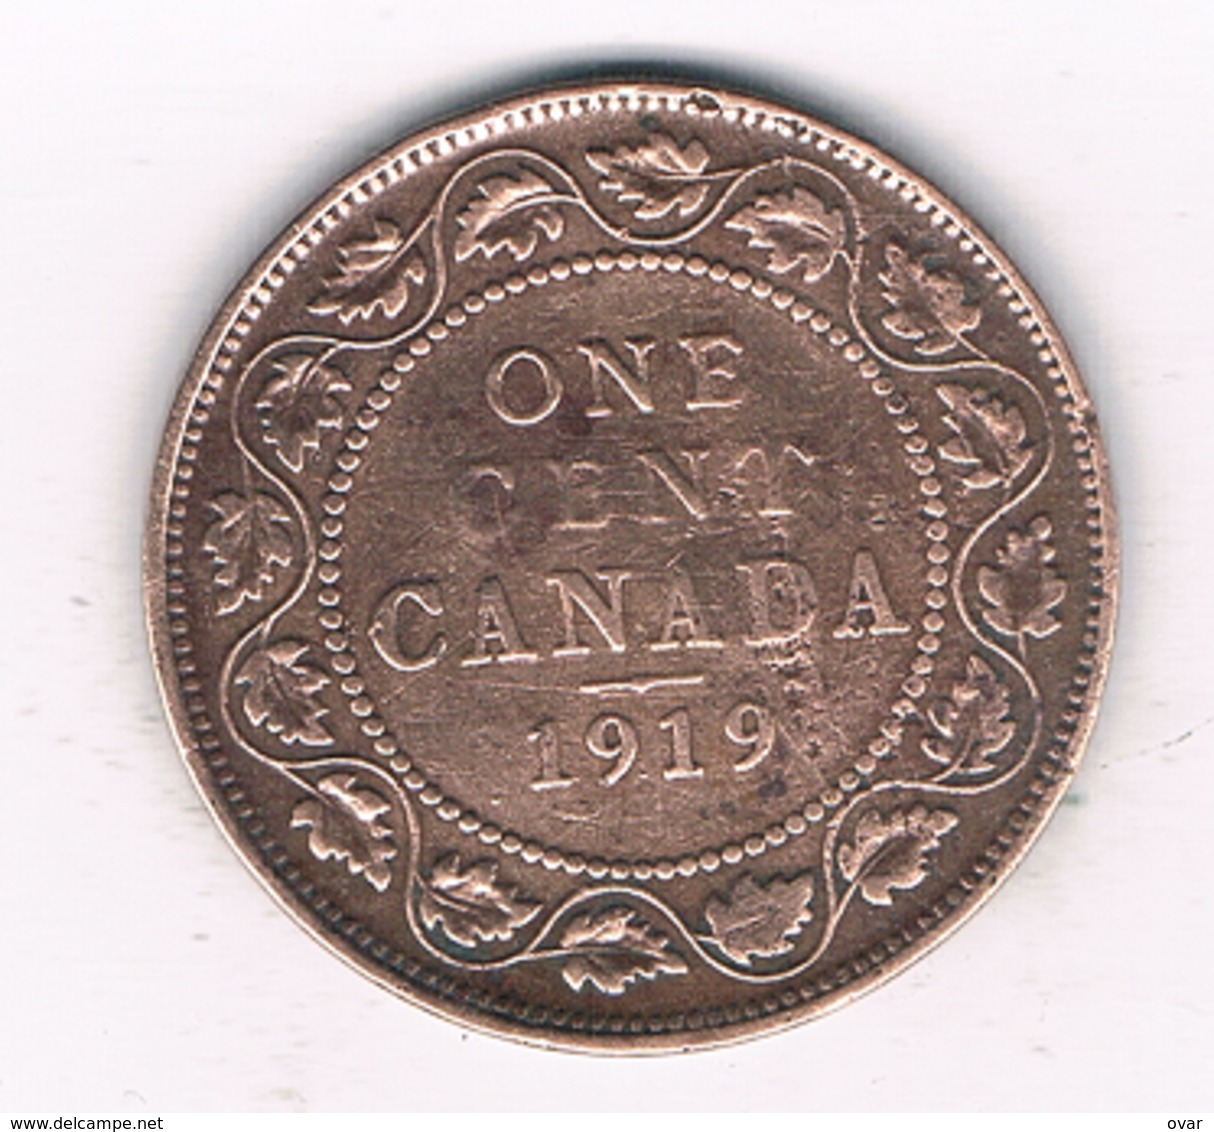 1 CENT 1919 CANADA /86/ - Canada